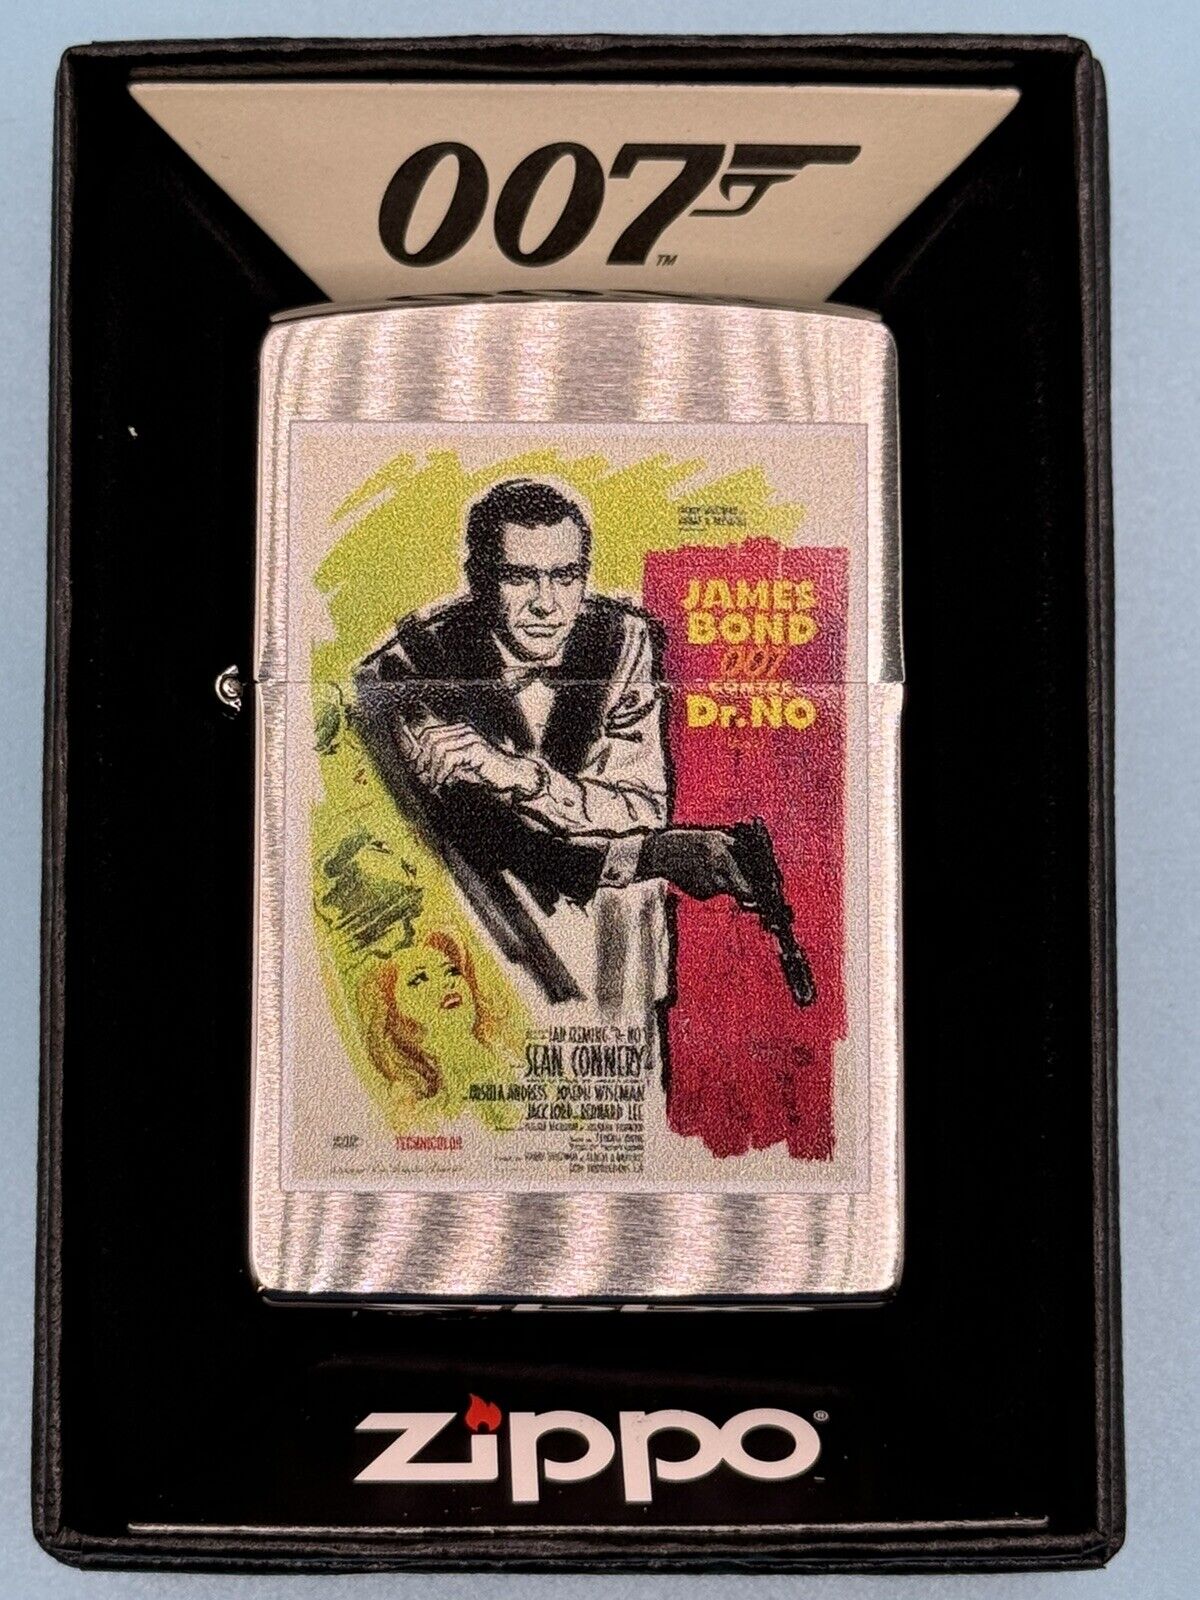 James Bond 007 Dr. No Poster Chrome Zippo Lighter NEW In Box Rare